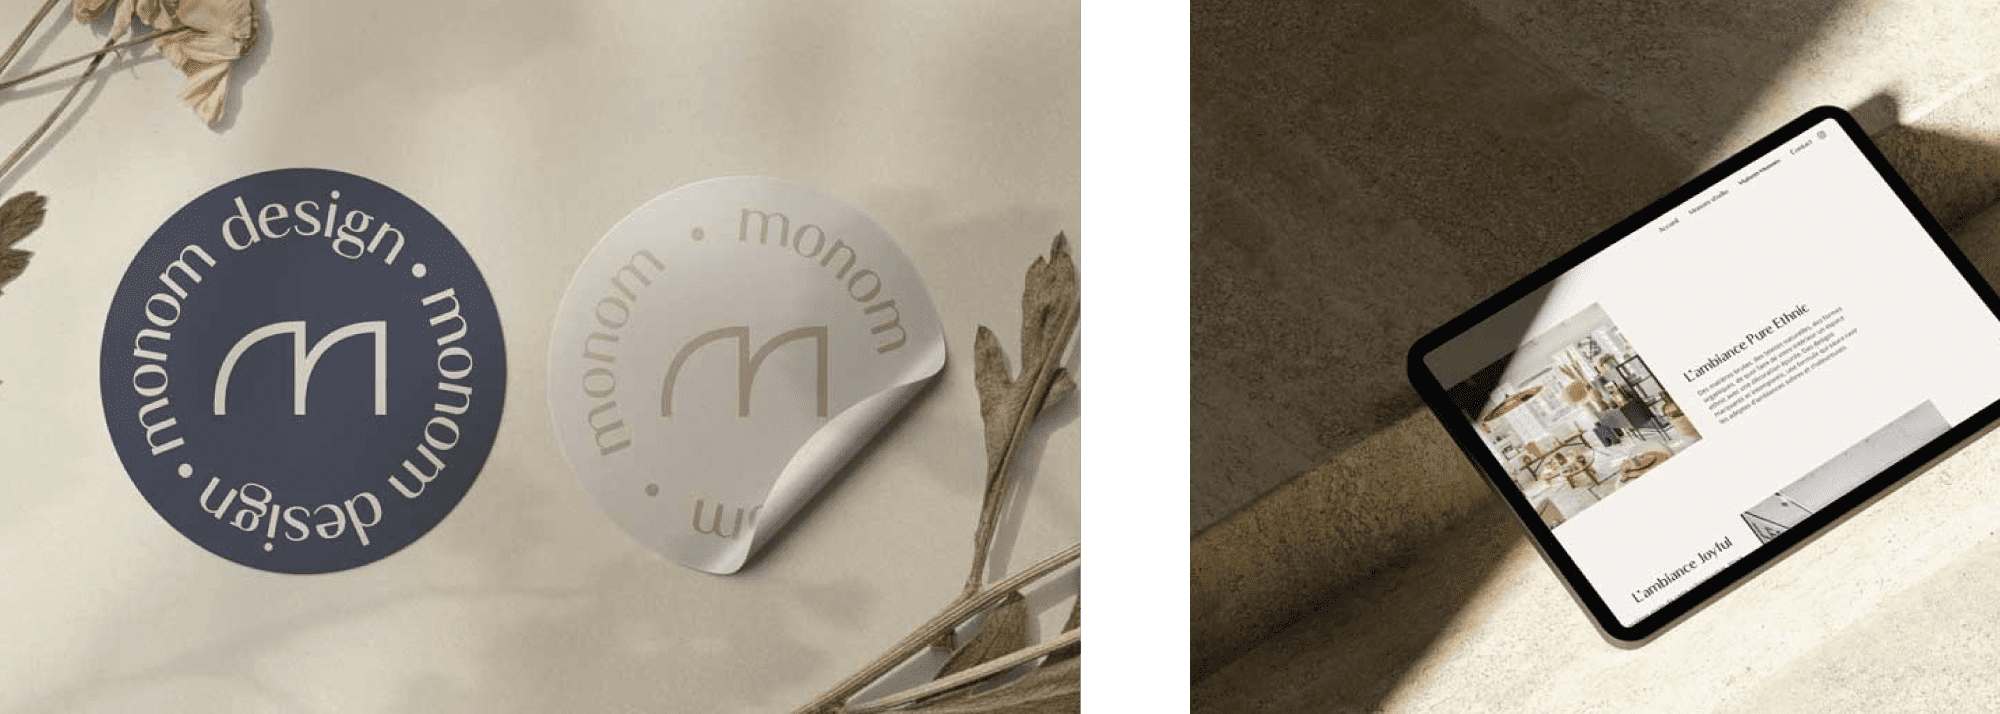 Mise en situation de l'identité de marque Monom sur deux stickers gris et blanc à coté du site internet présenté sur tablette.